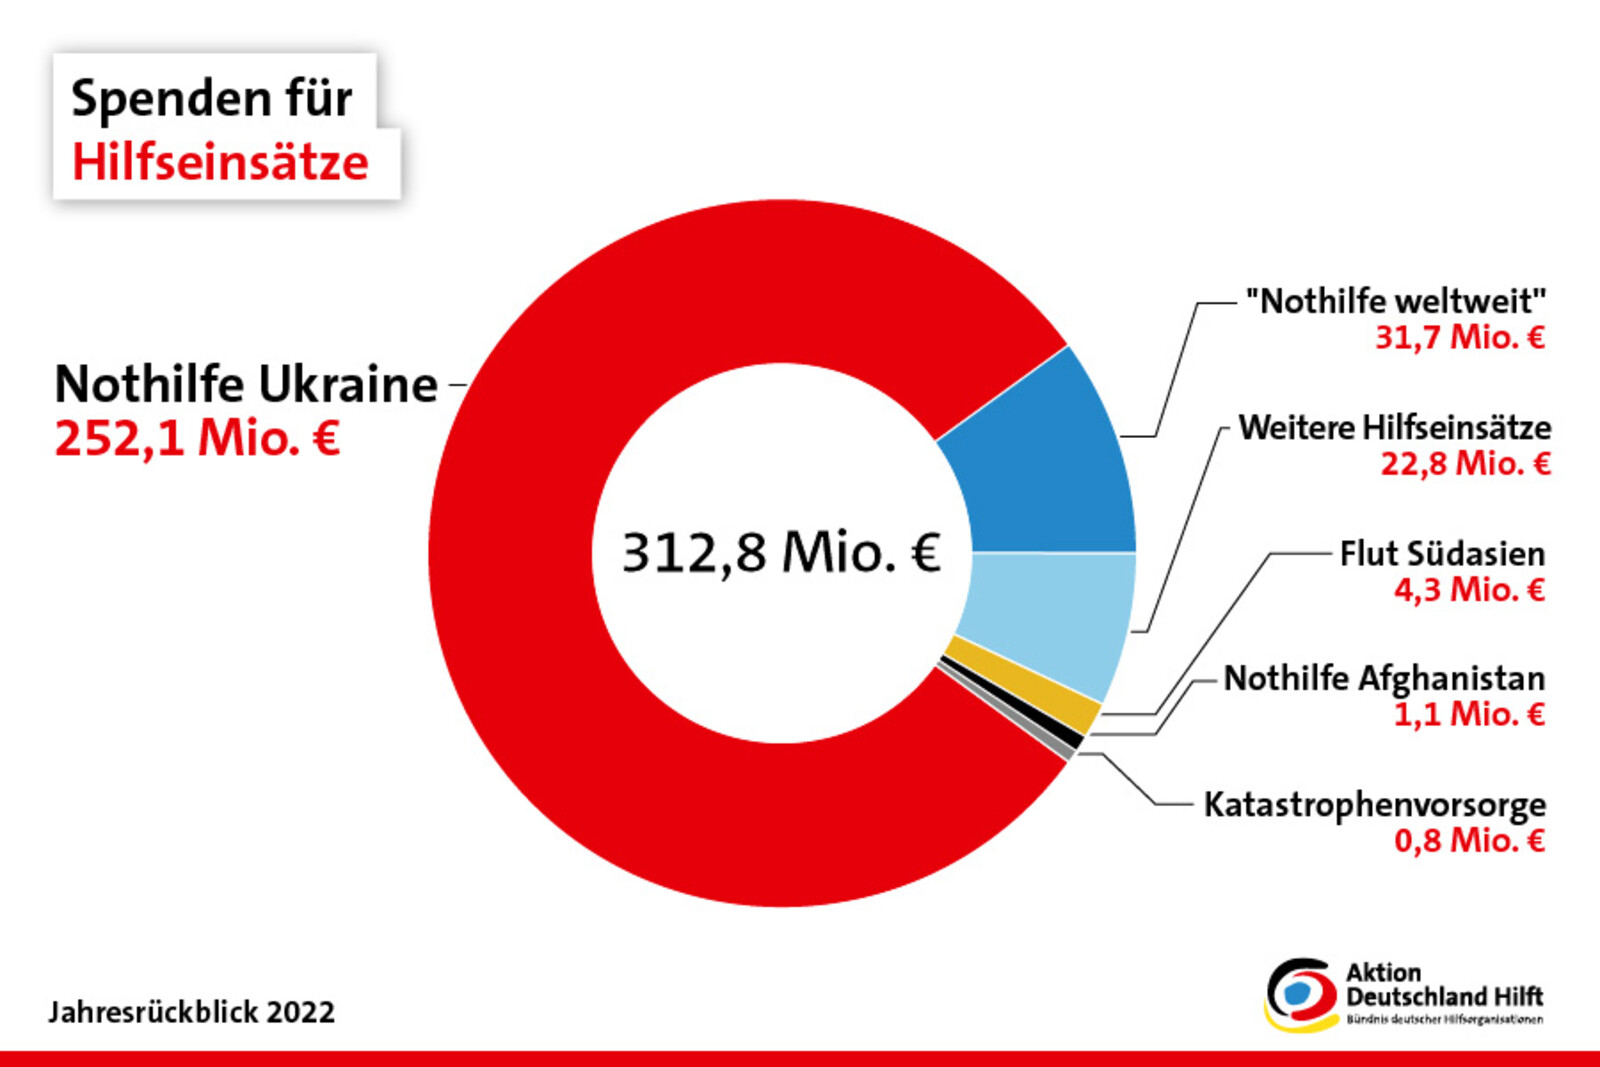 Über 252 Millionen Euro Spenden erhielt die Nothilfe in der Ukraine